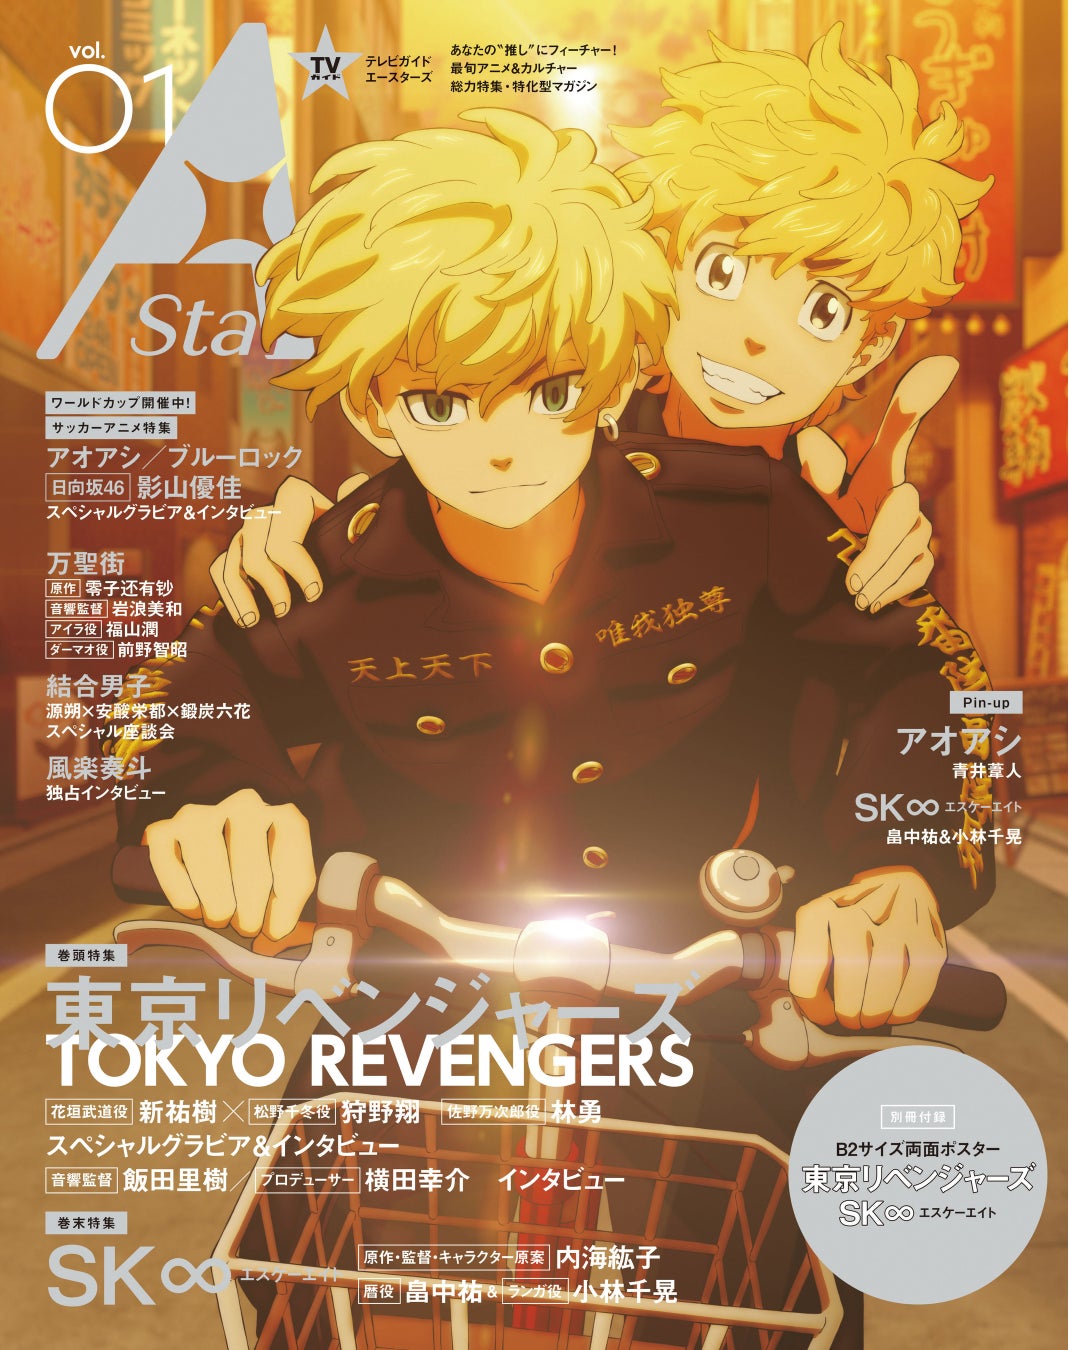 新アニメ&カルチャー誌「TVガイド A Stars vol.01」、本日発売！　表紙を飾るのは「東京リベンジャーズ」、裏表紙には「SK∞ エスケーエイト」